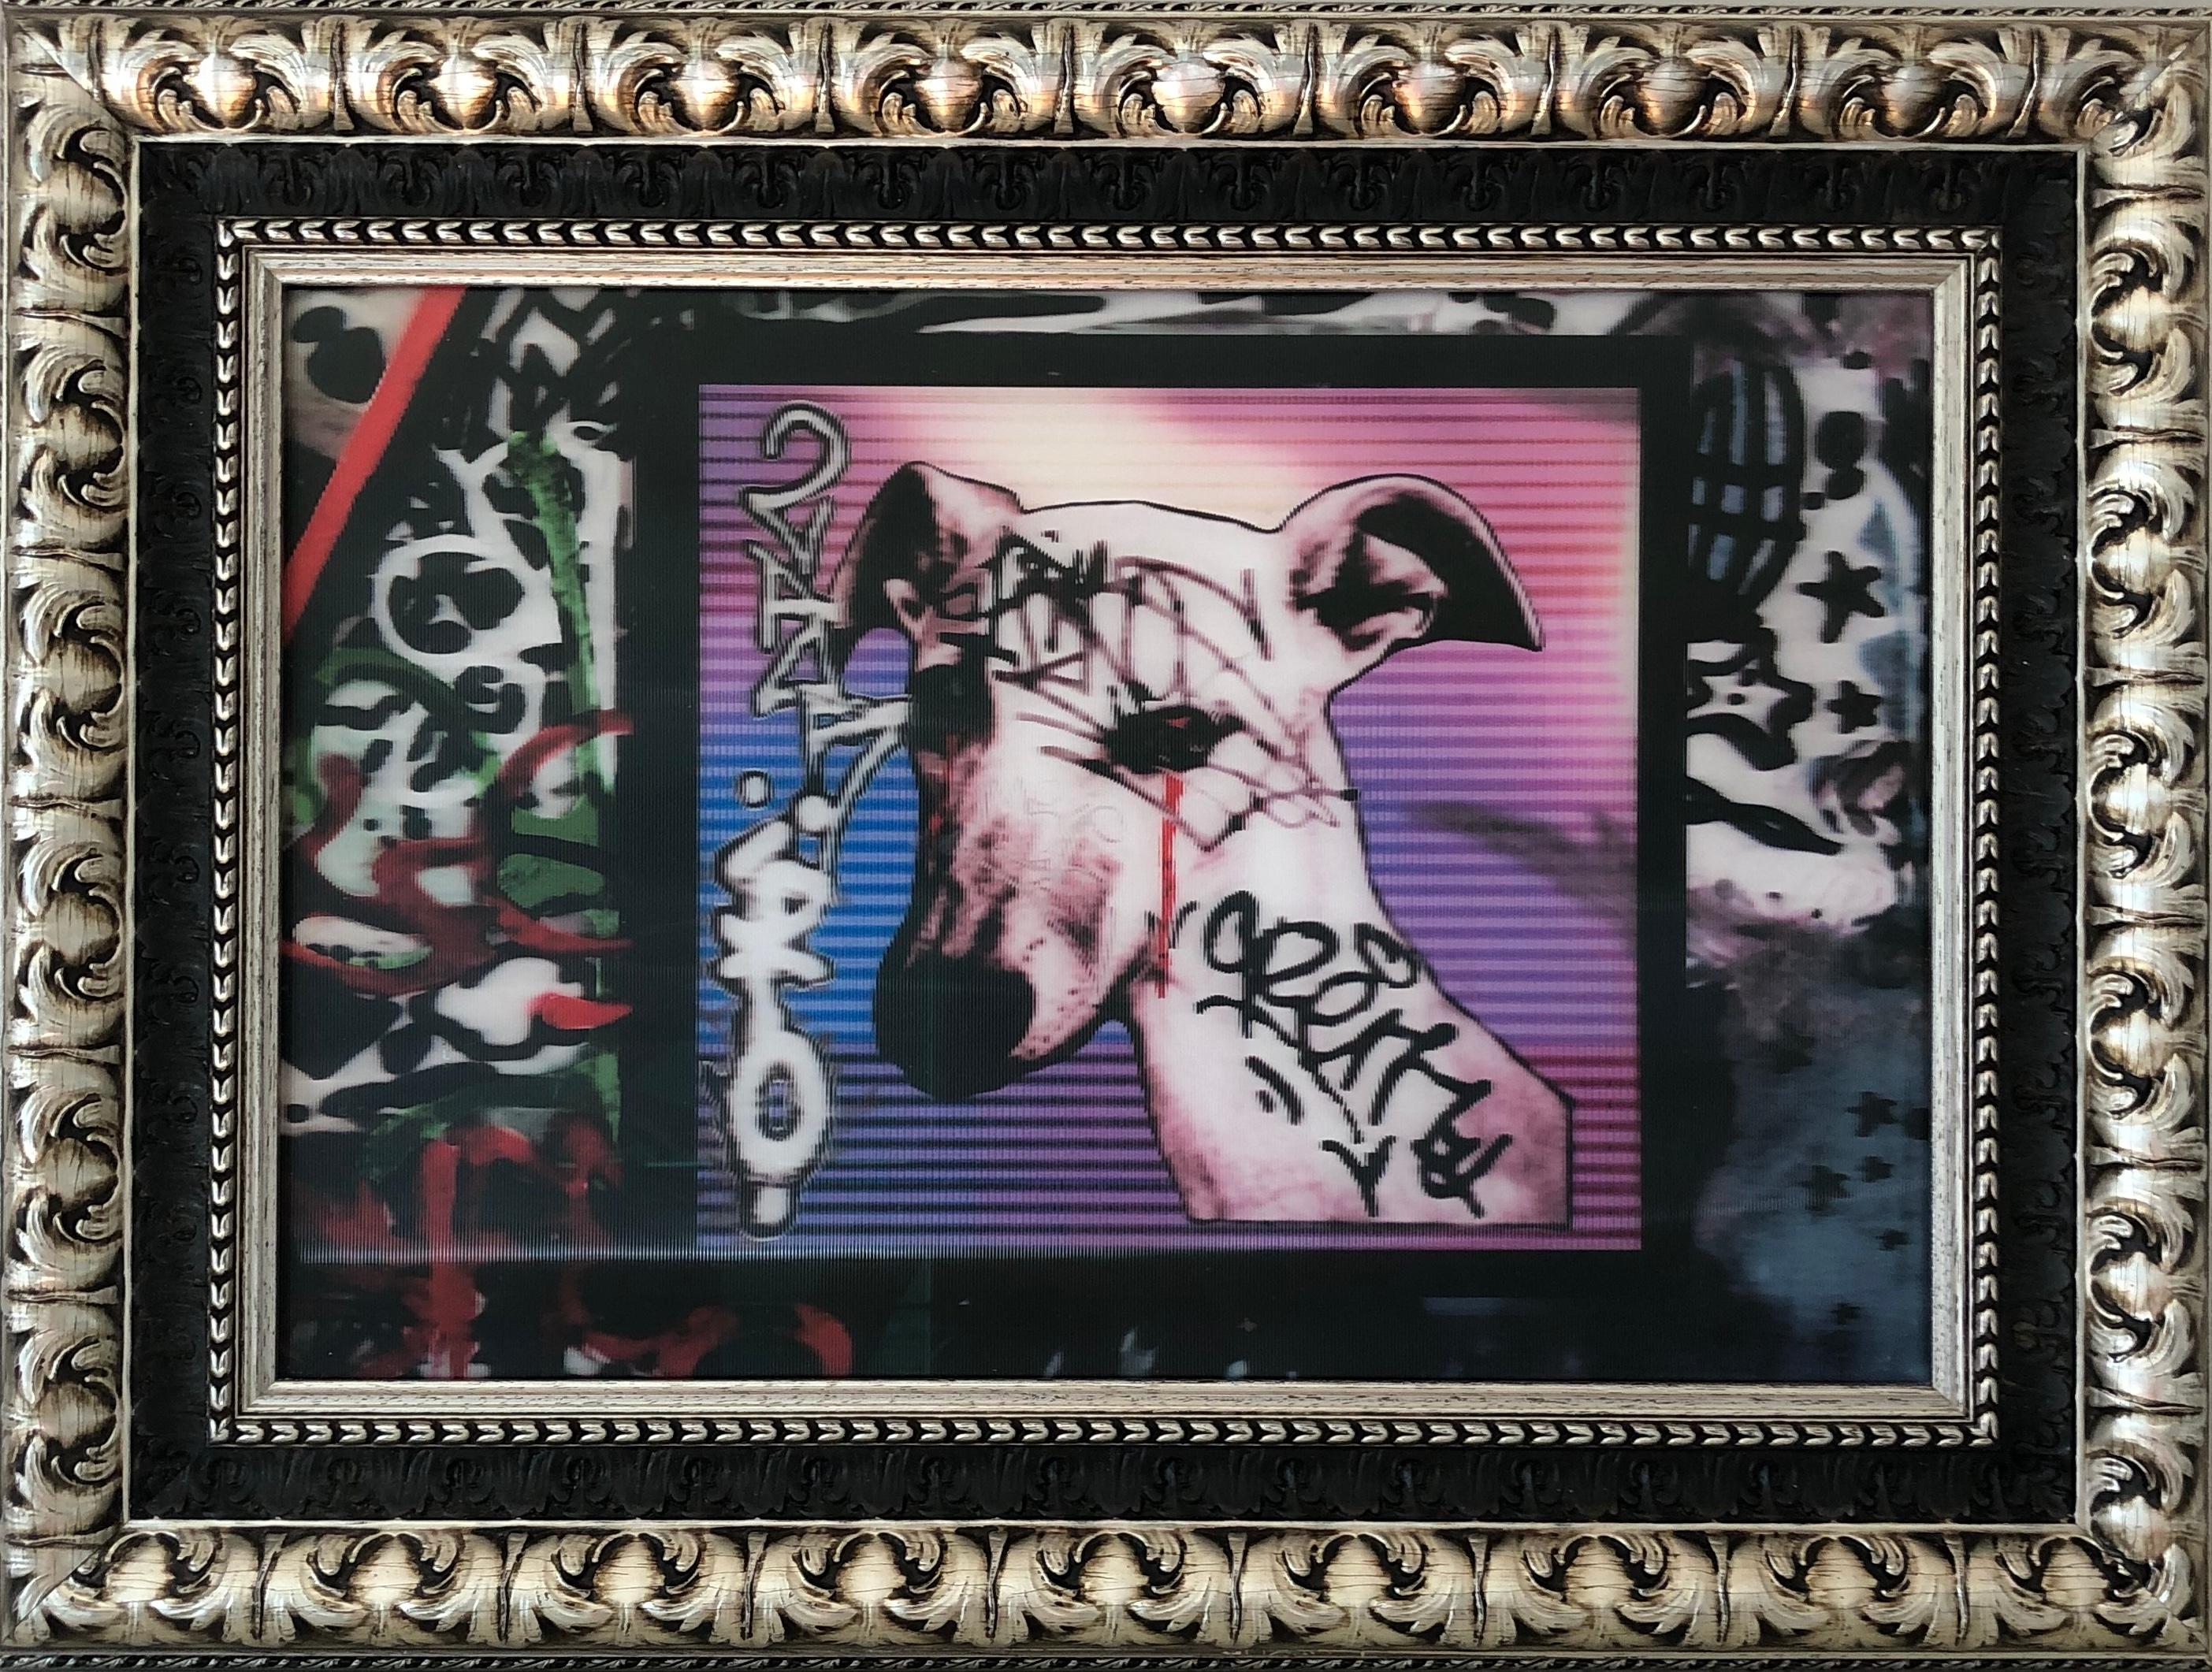 Le Chien de les Frigos - photo lenticulaire, graffiti en rose, rouge, blanc, bleu, noir - Mixed Media Art de Alec Malyshev